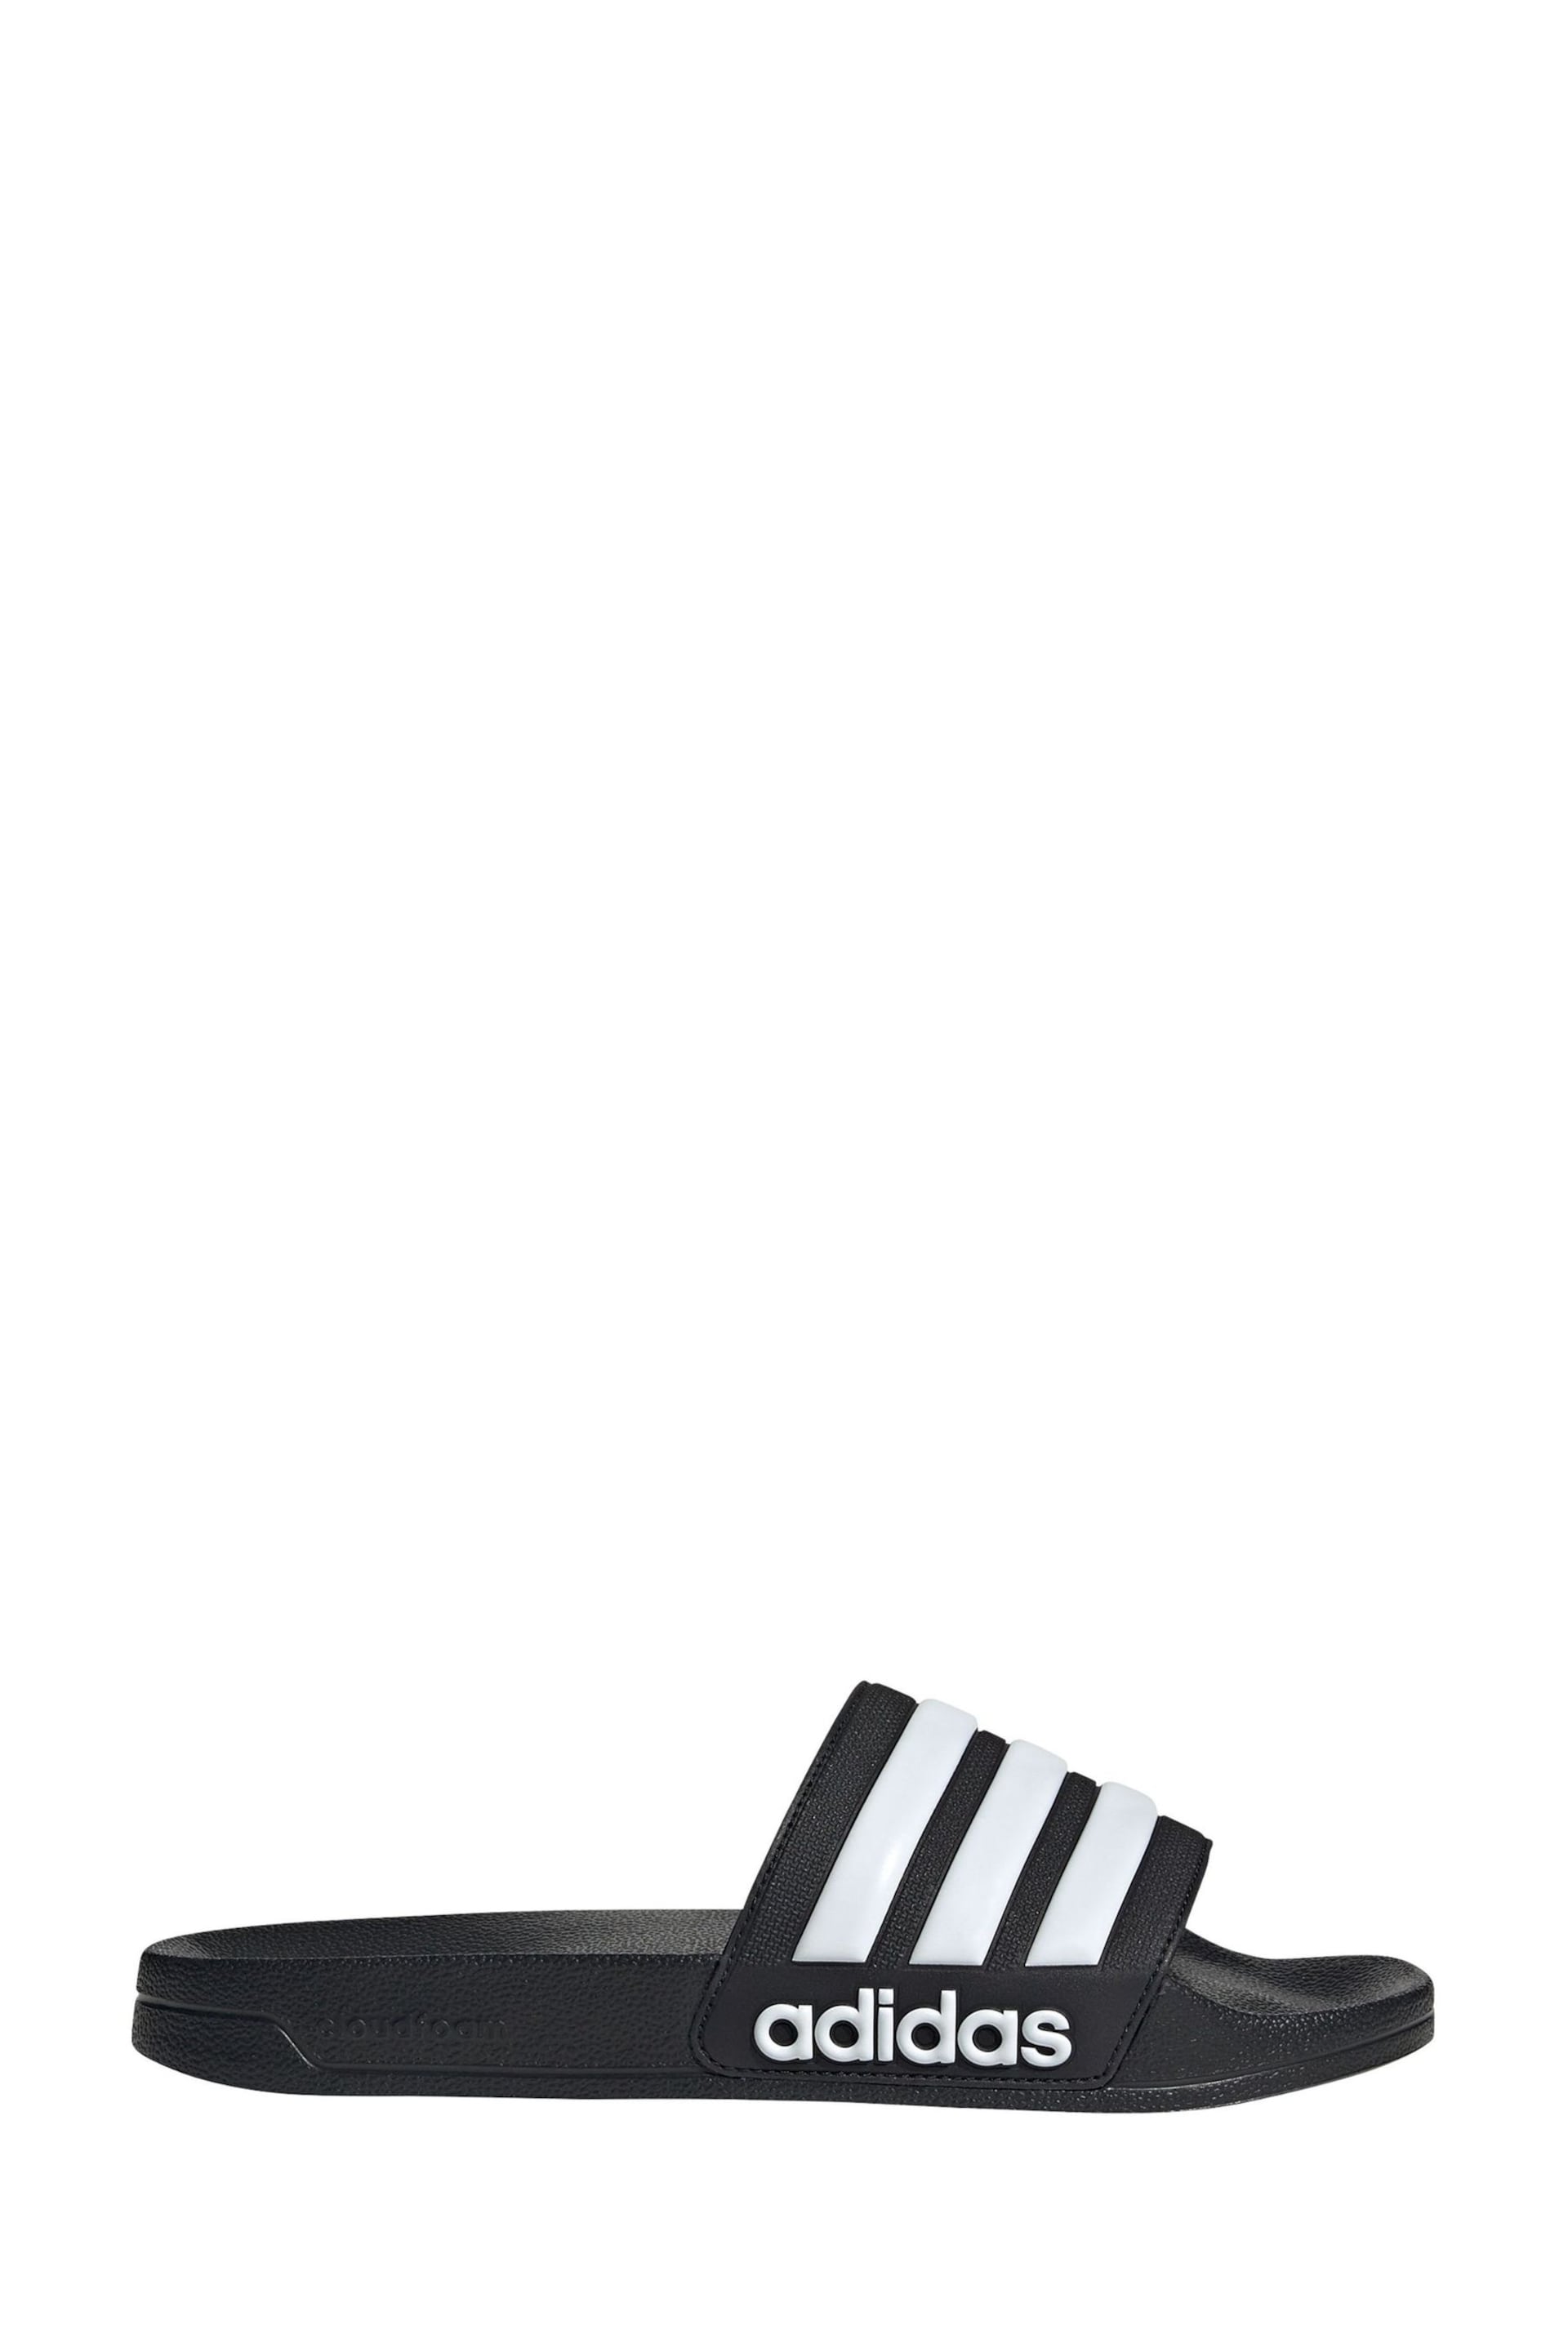 adidas Light Black Adilette Shower Sliders - Image 3 of 9